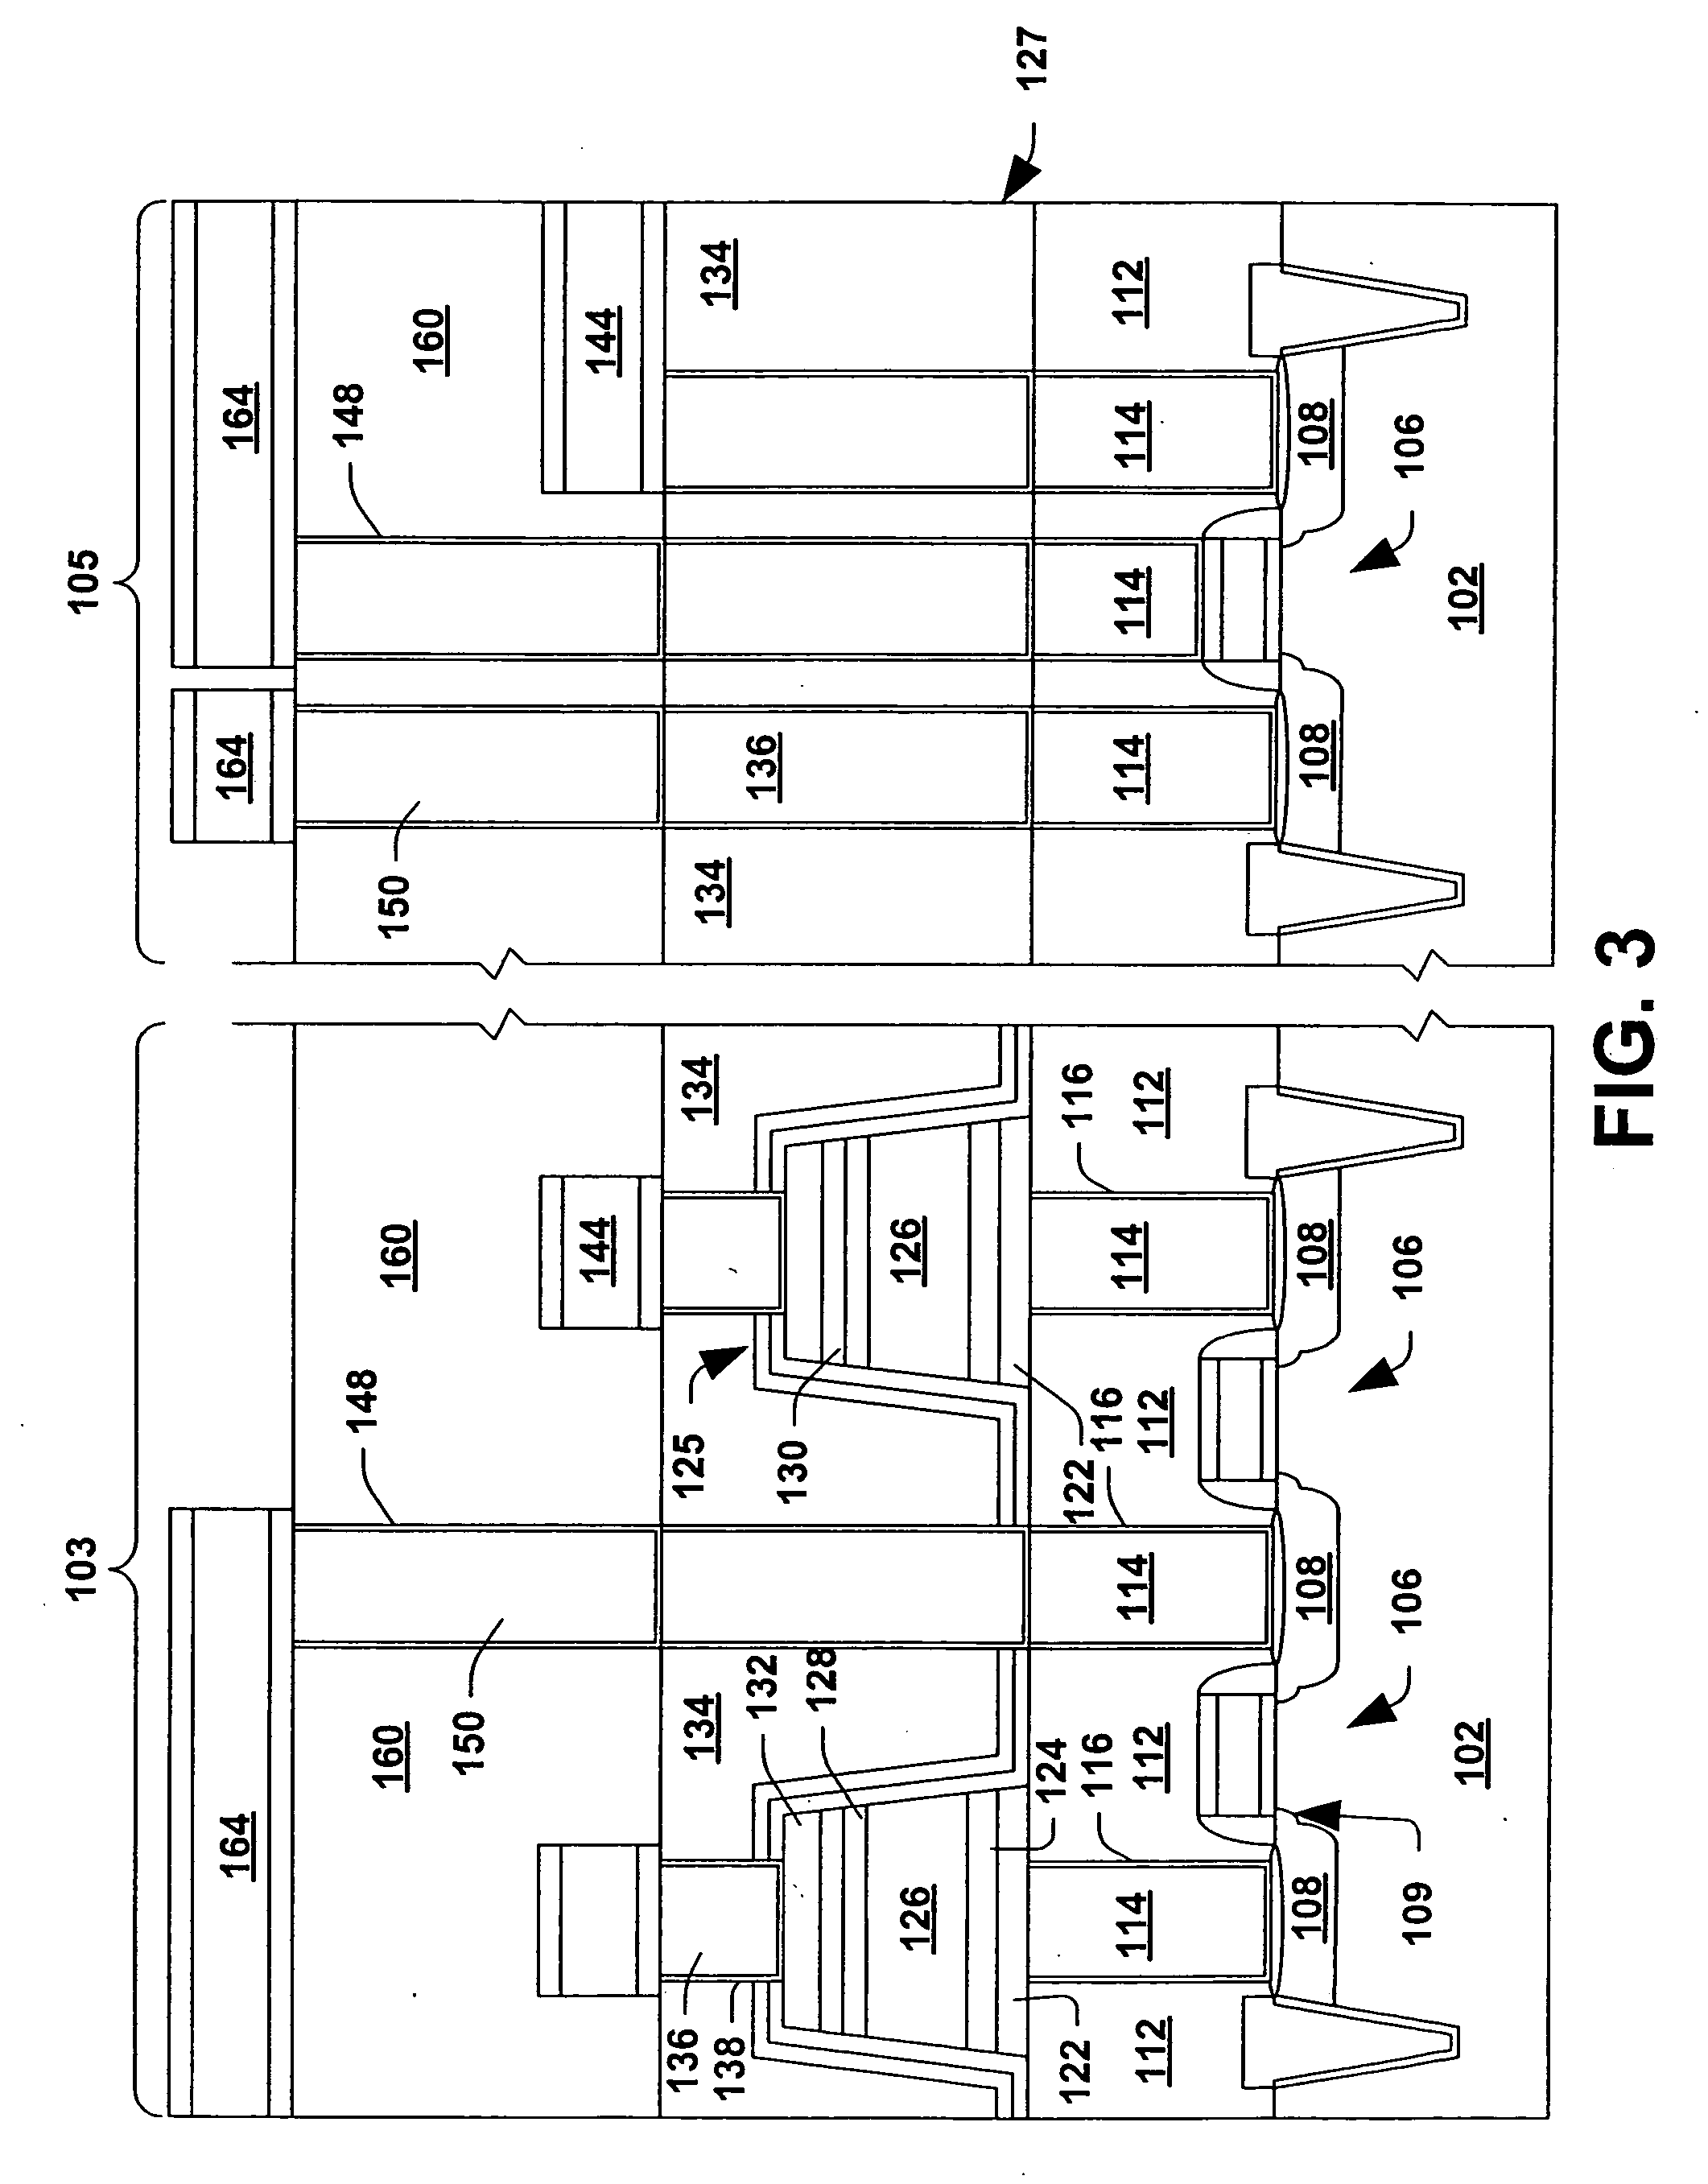 FeRAM capacitor stack etch